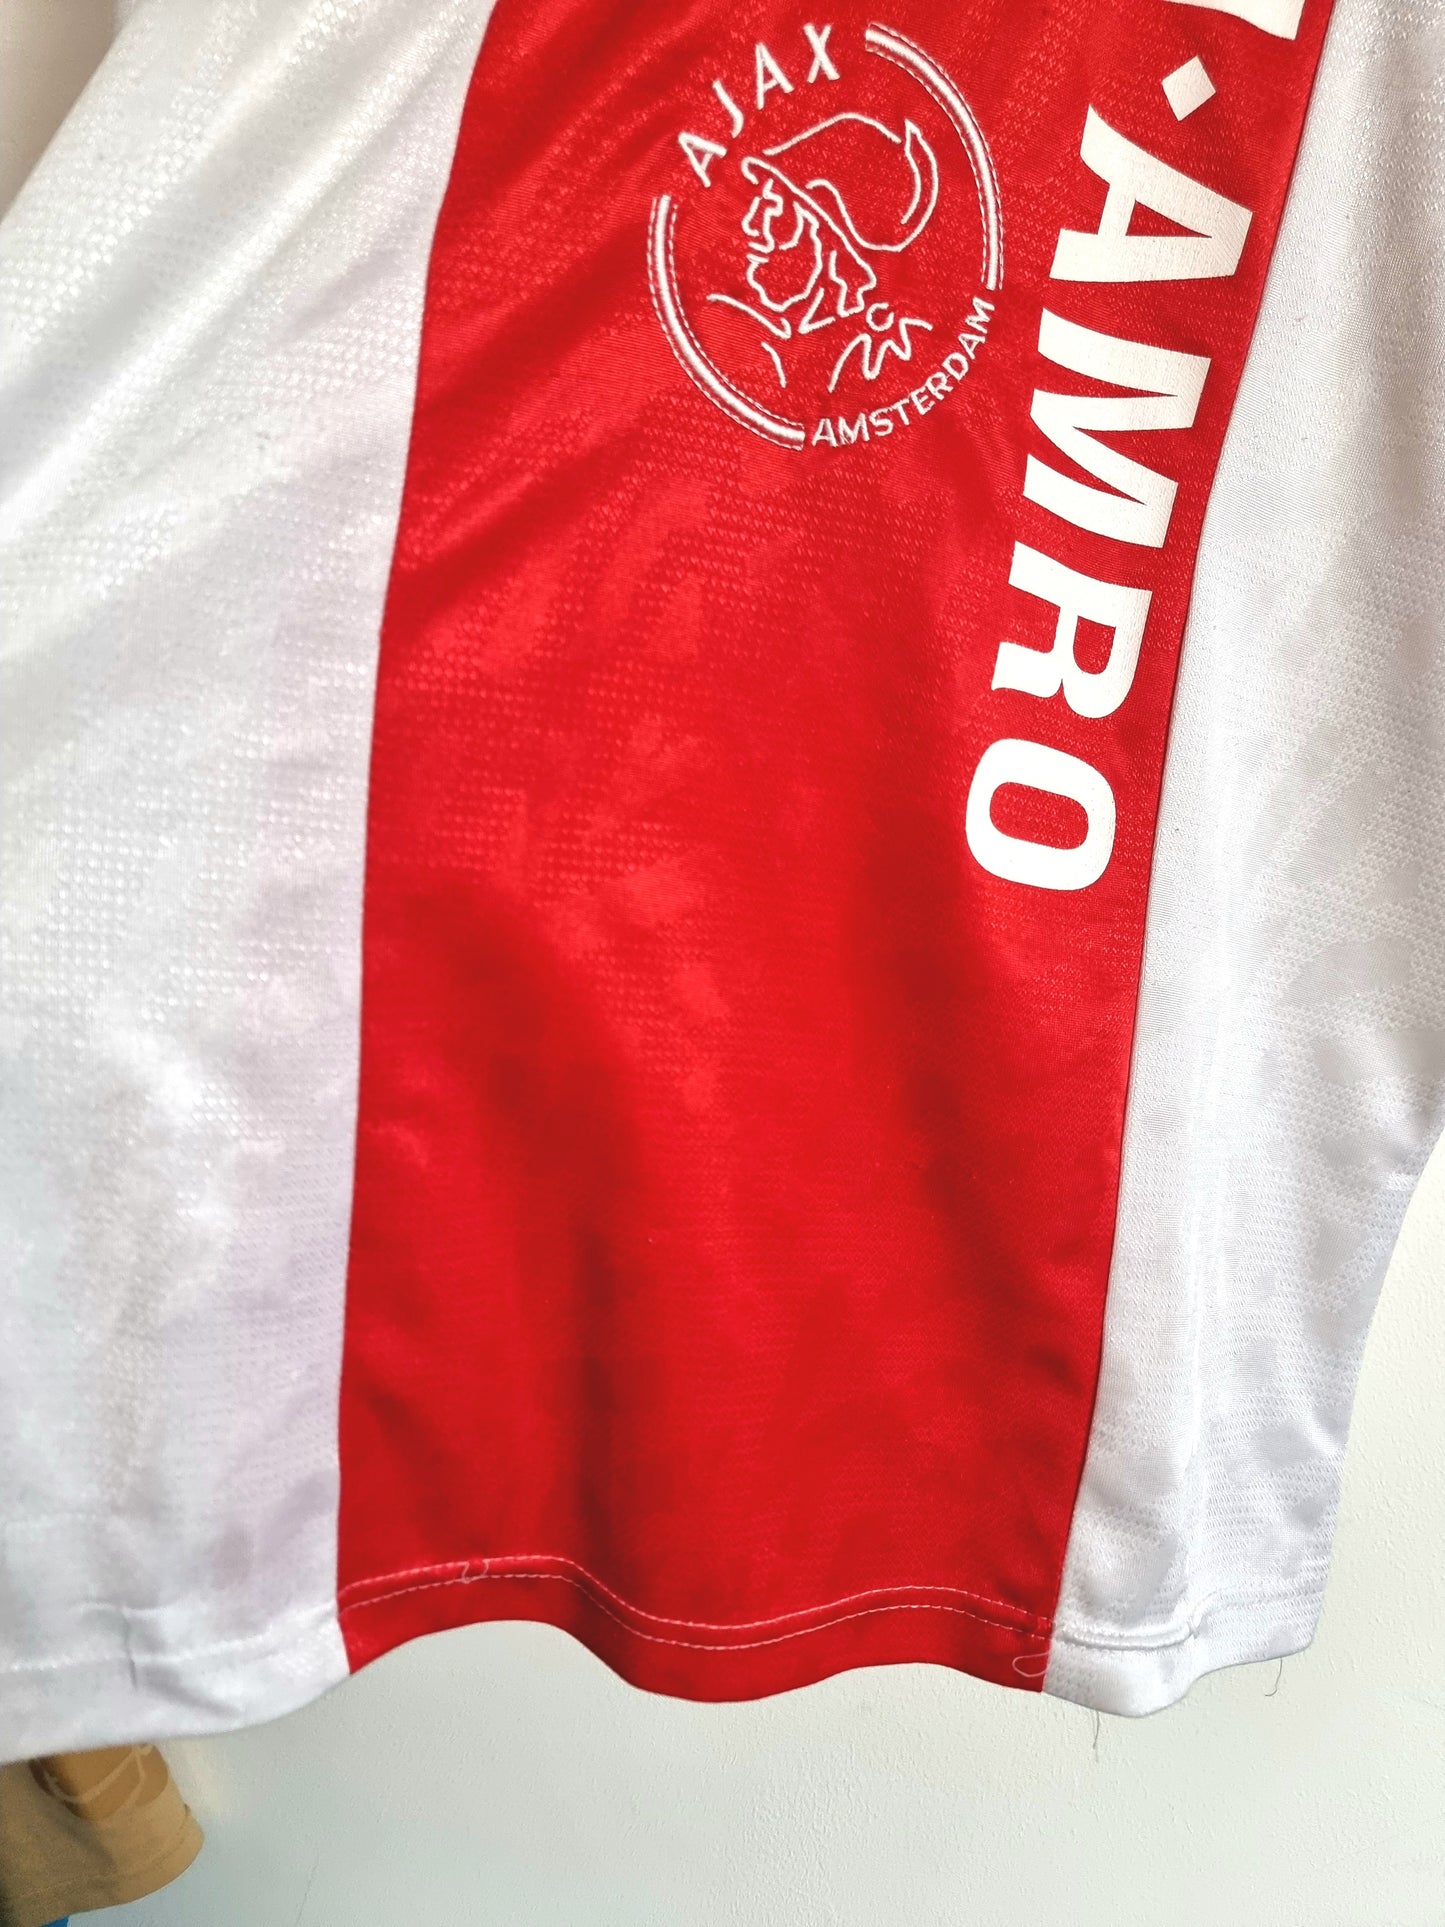 Umbro Ajax 93/94 Home Shirt Small